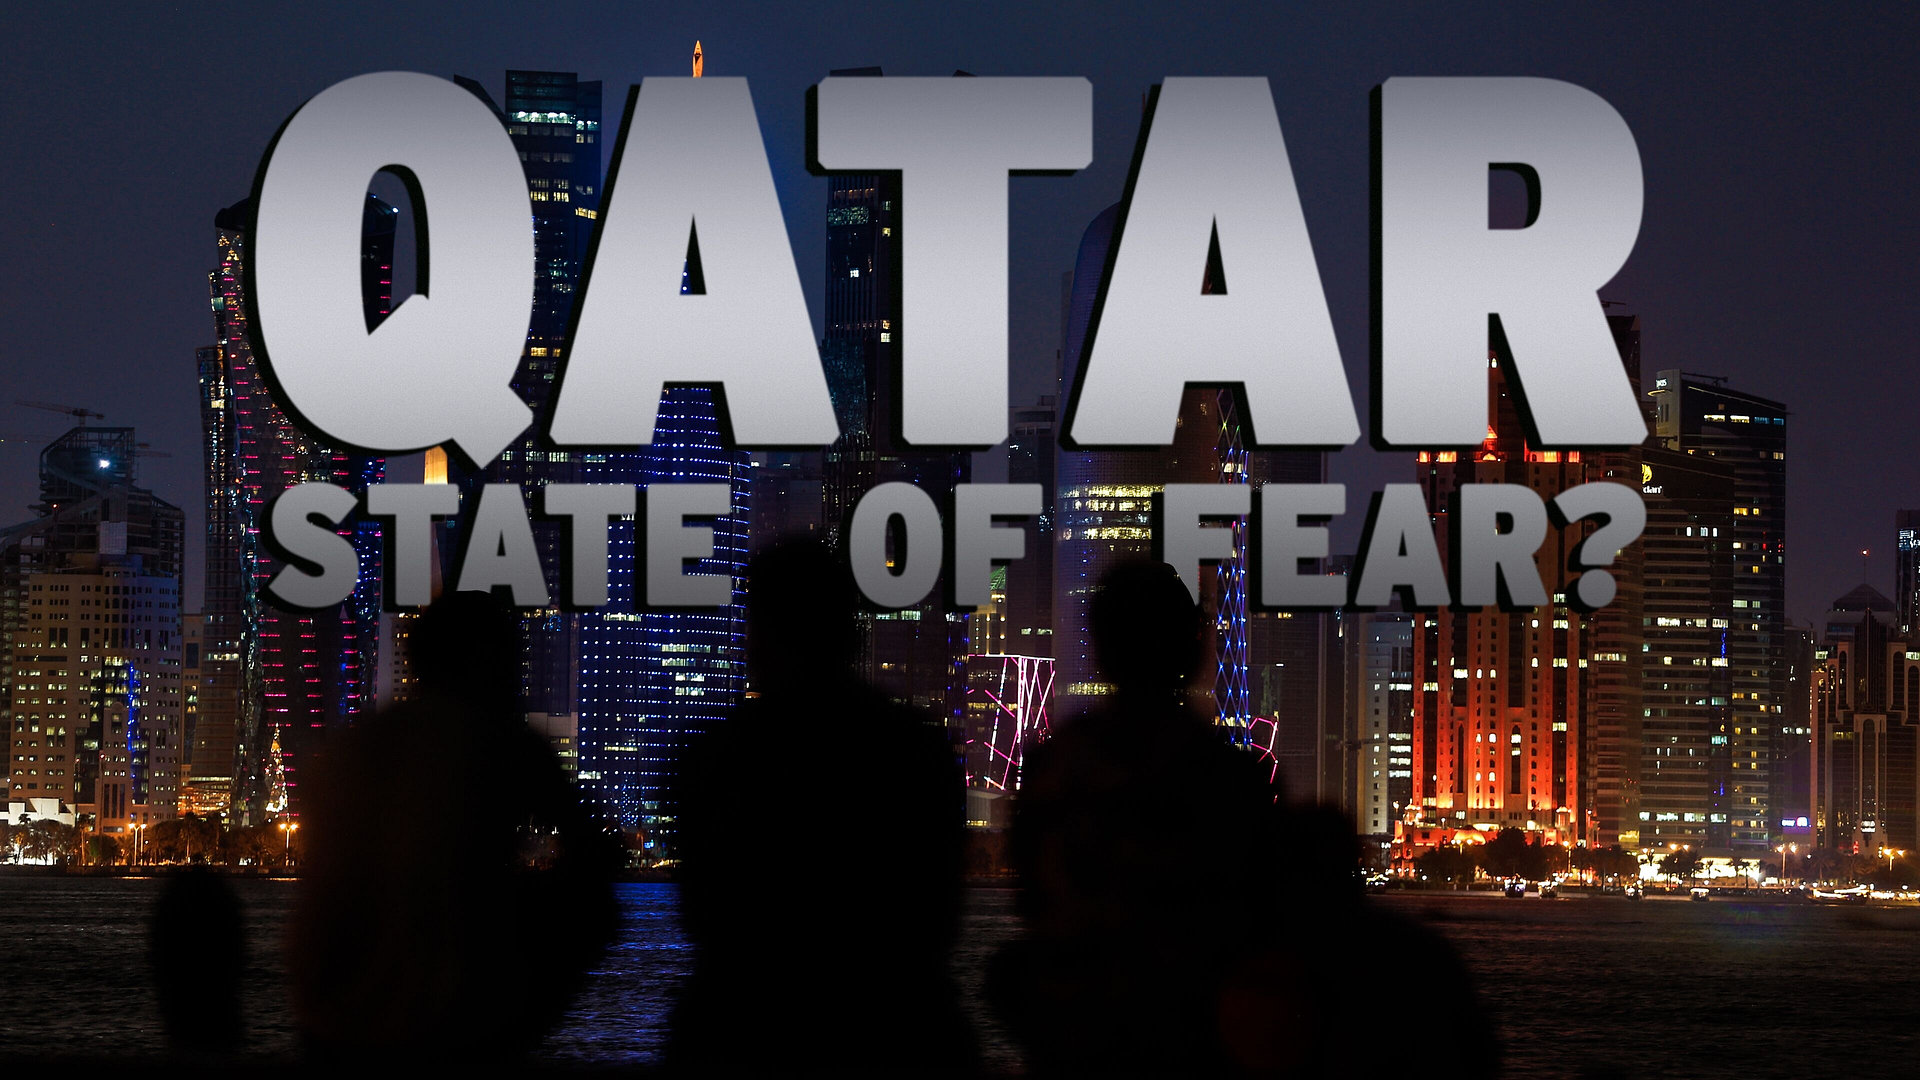 Qatar: State of Fear?